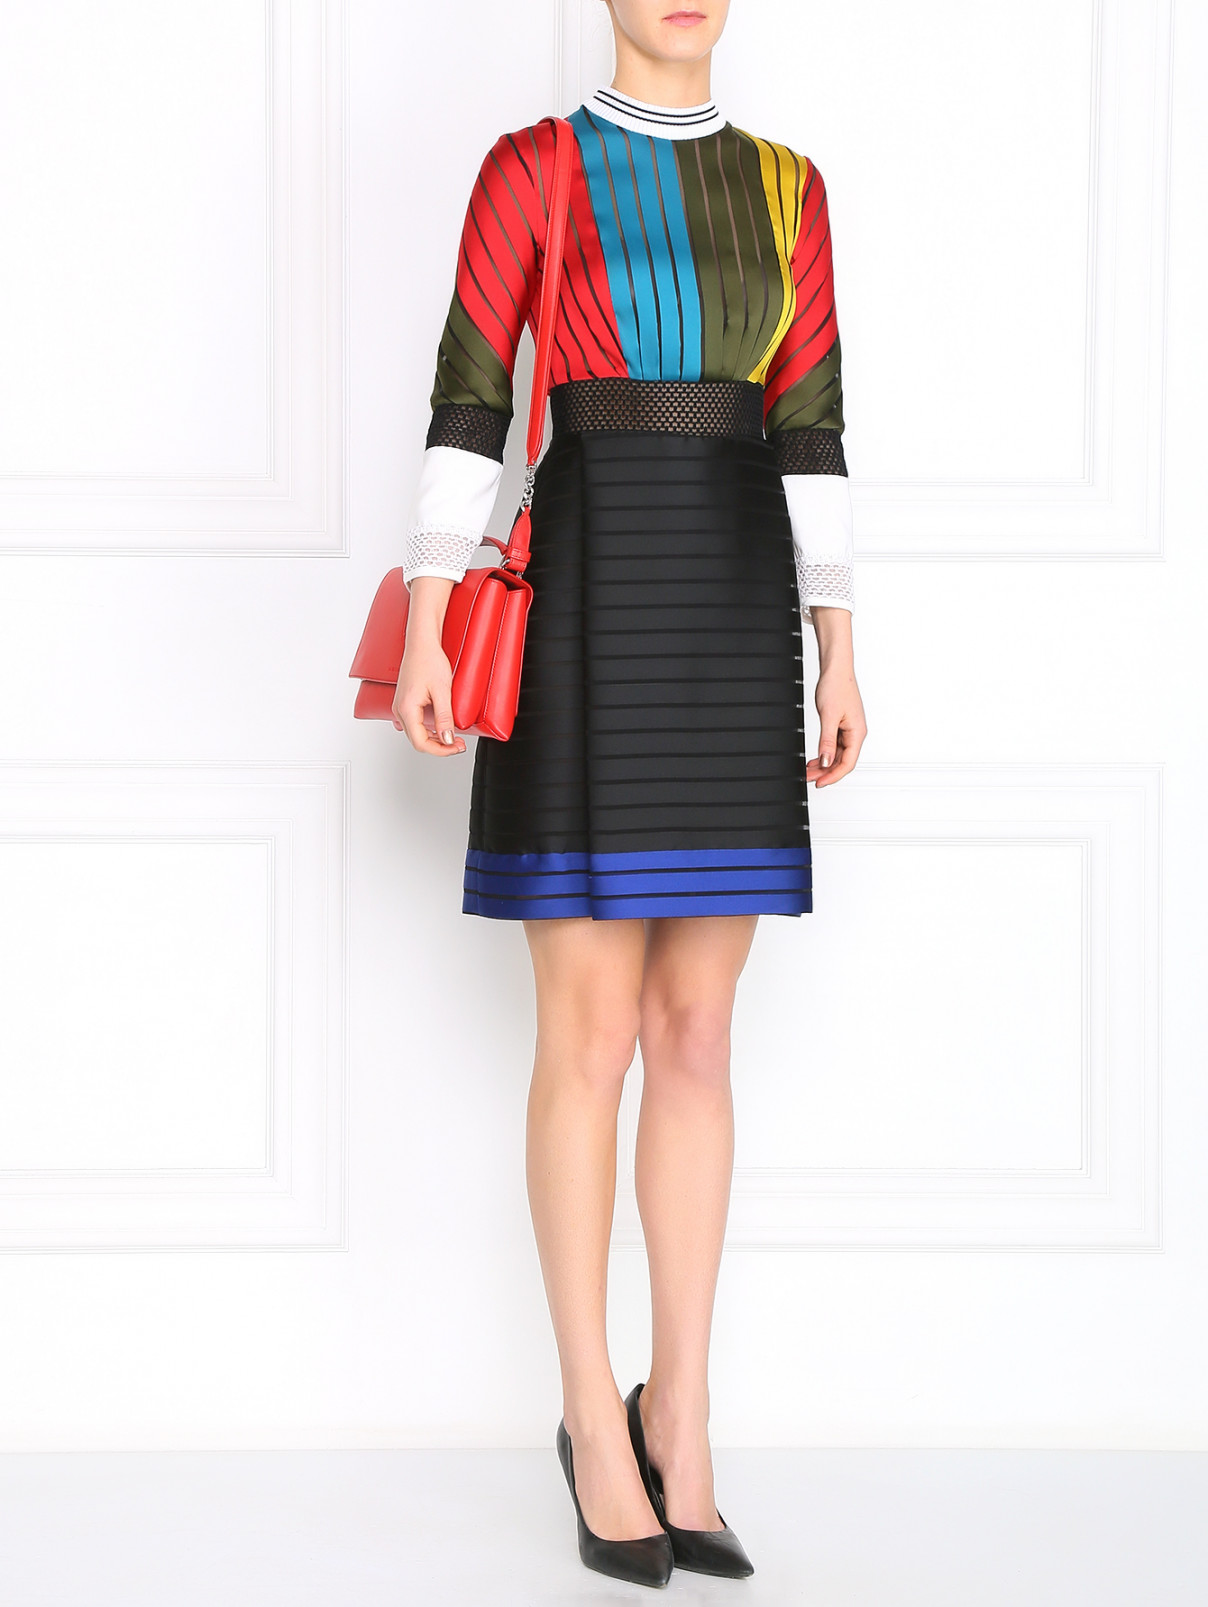 Платье из шелка с узором "полоска" Mary Katrantzou  –  Модель Общий вид  – Цвет:  Черный